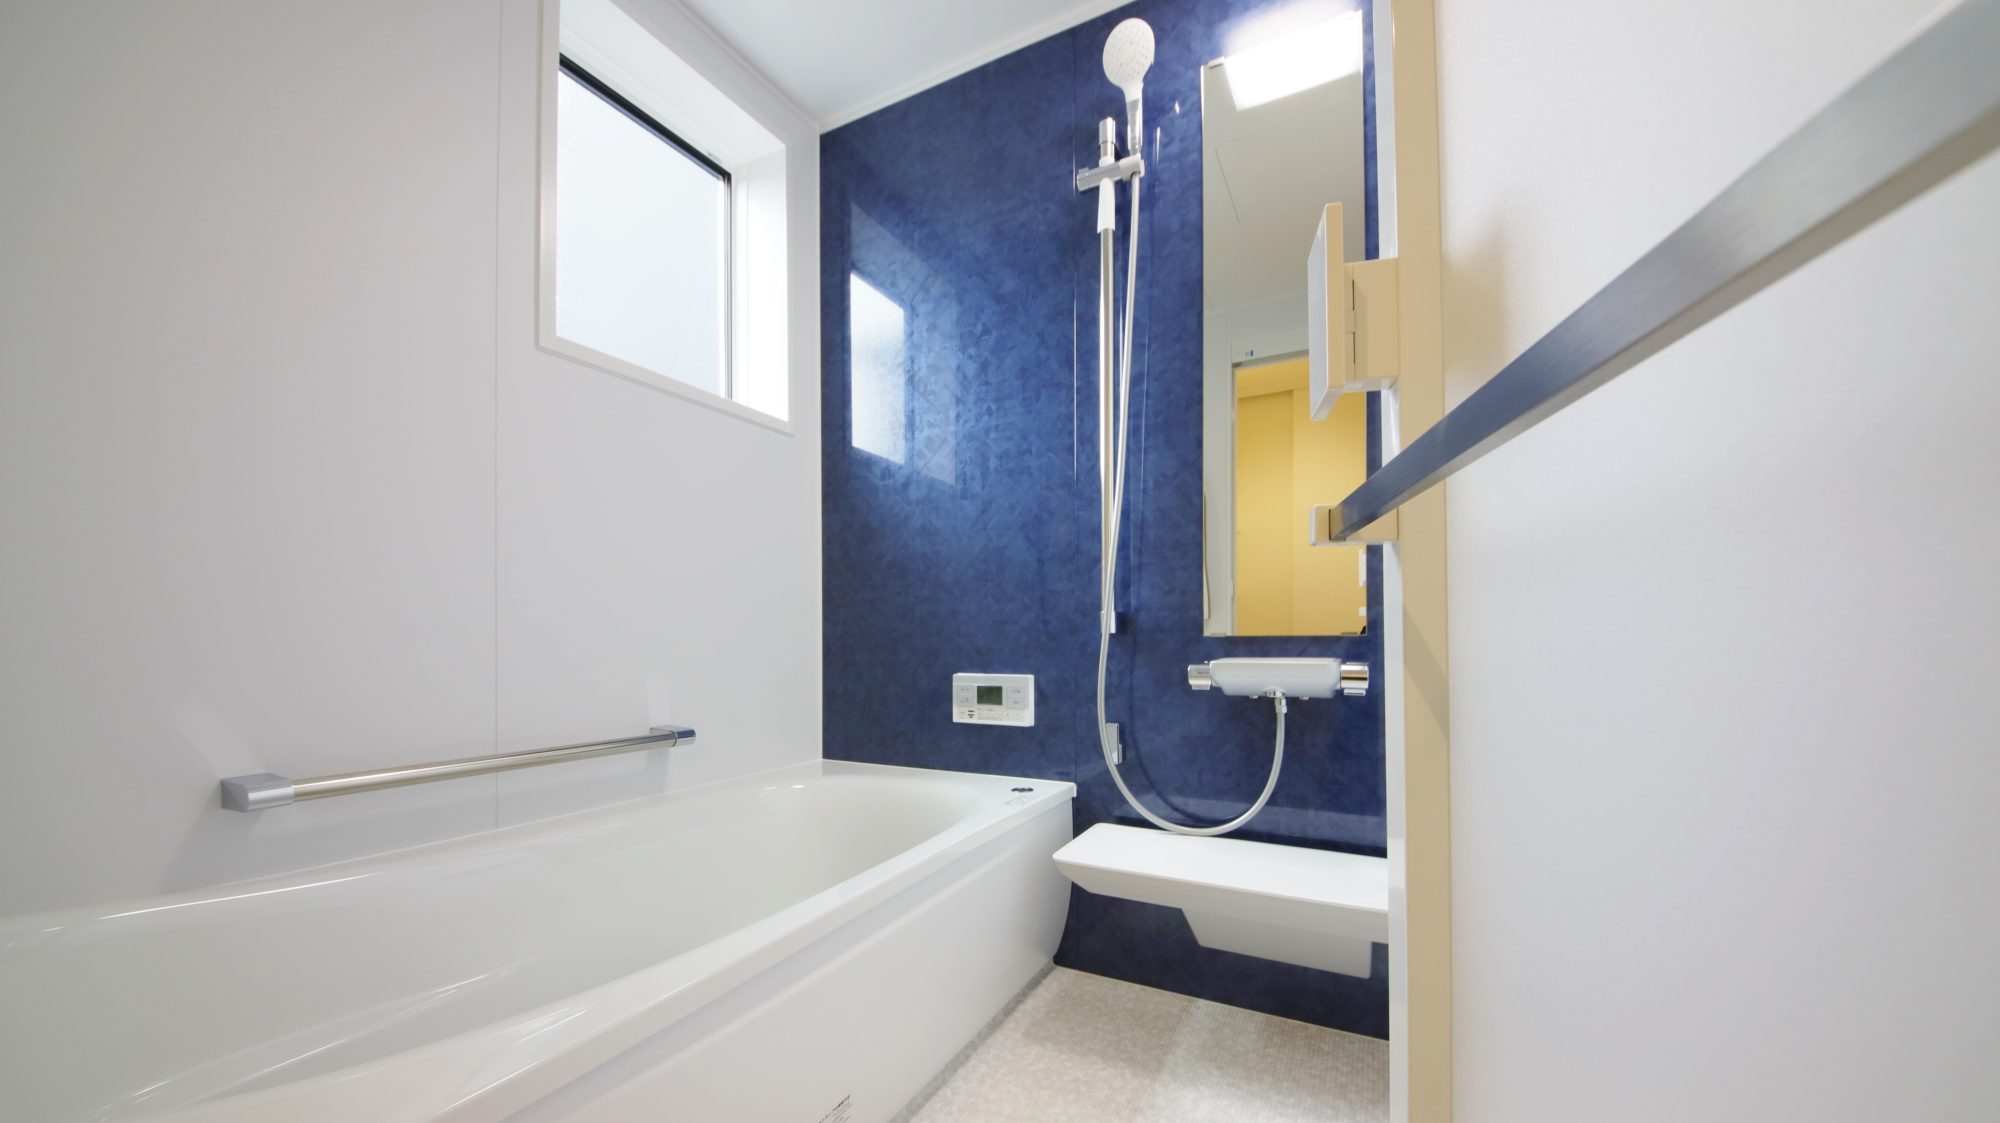 【ハウスクラフトの住宅標準仕様】浴室･バスルームの特徴&ヒートショックプロテイン入浴法